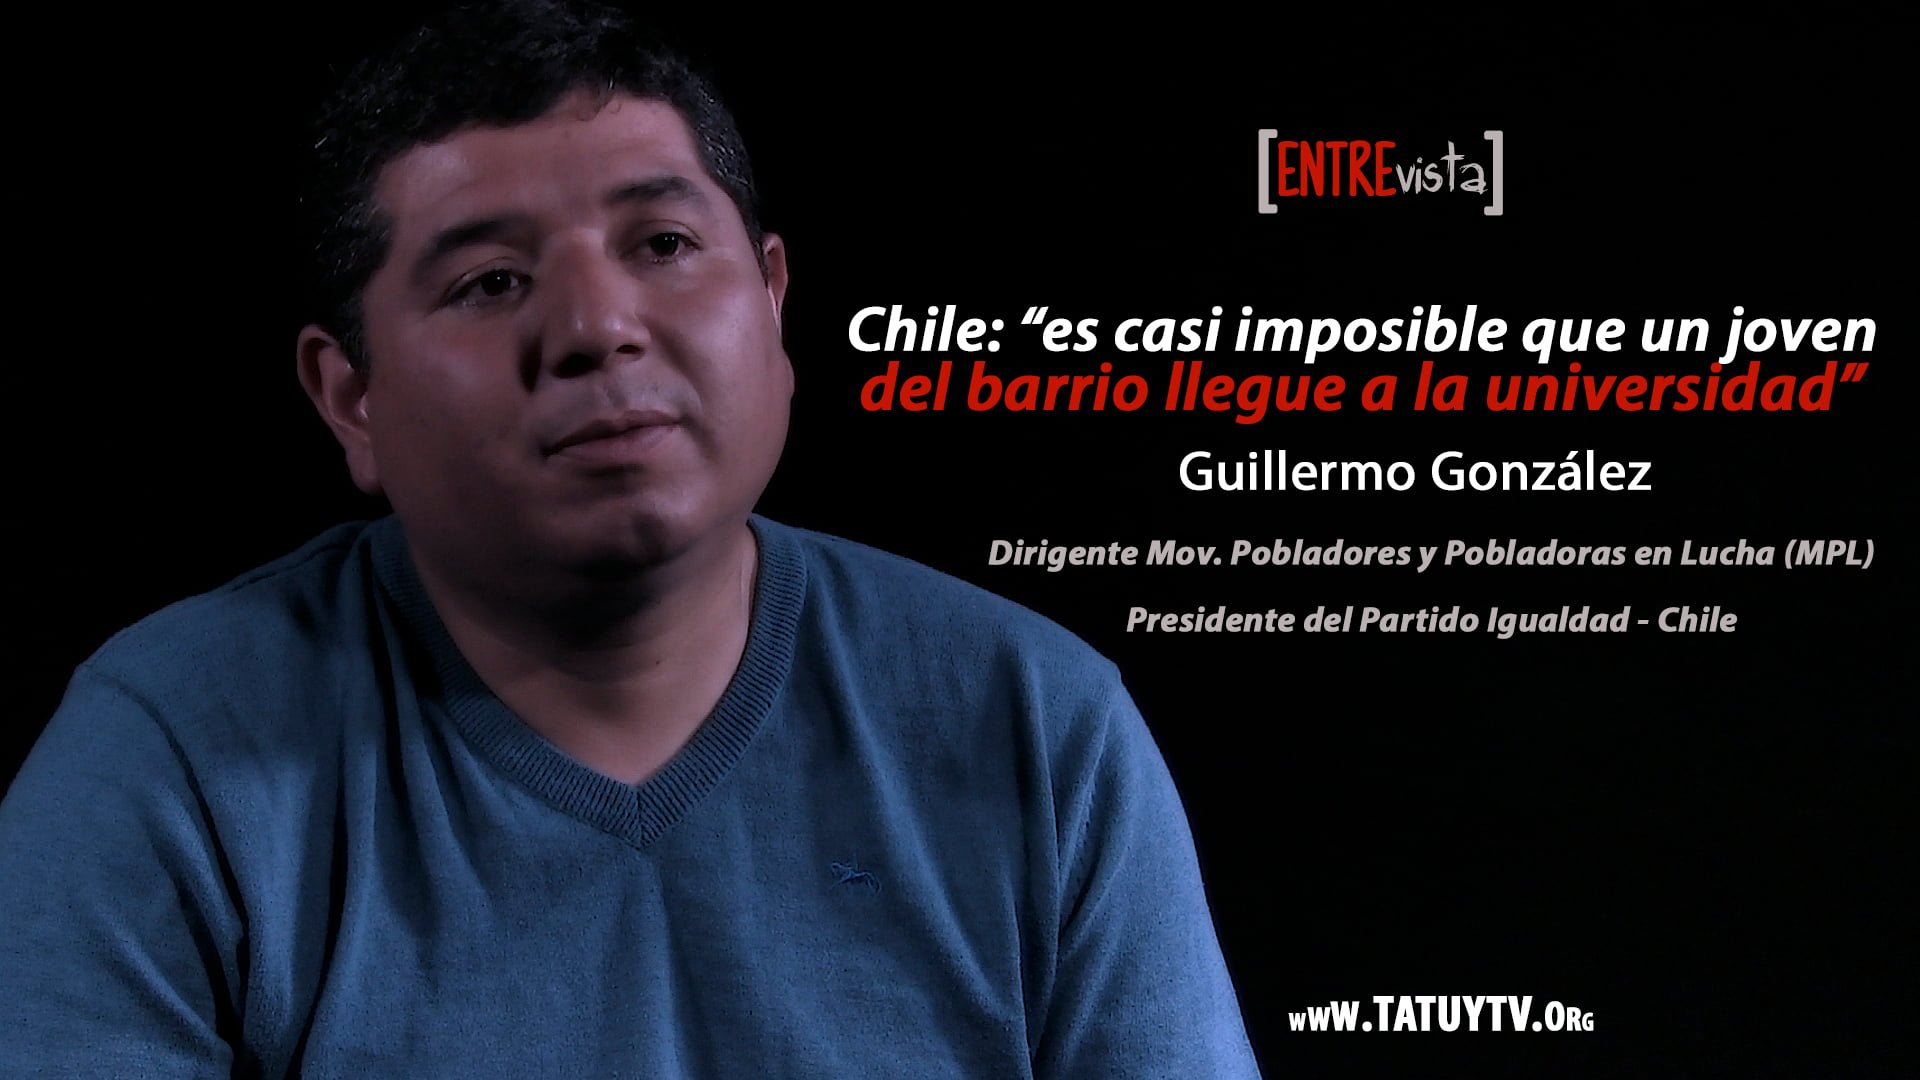 [ENTREVISTA] Chile: "es casi imposible que un joven del barrio llegue a la universidad"